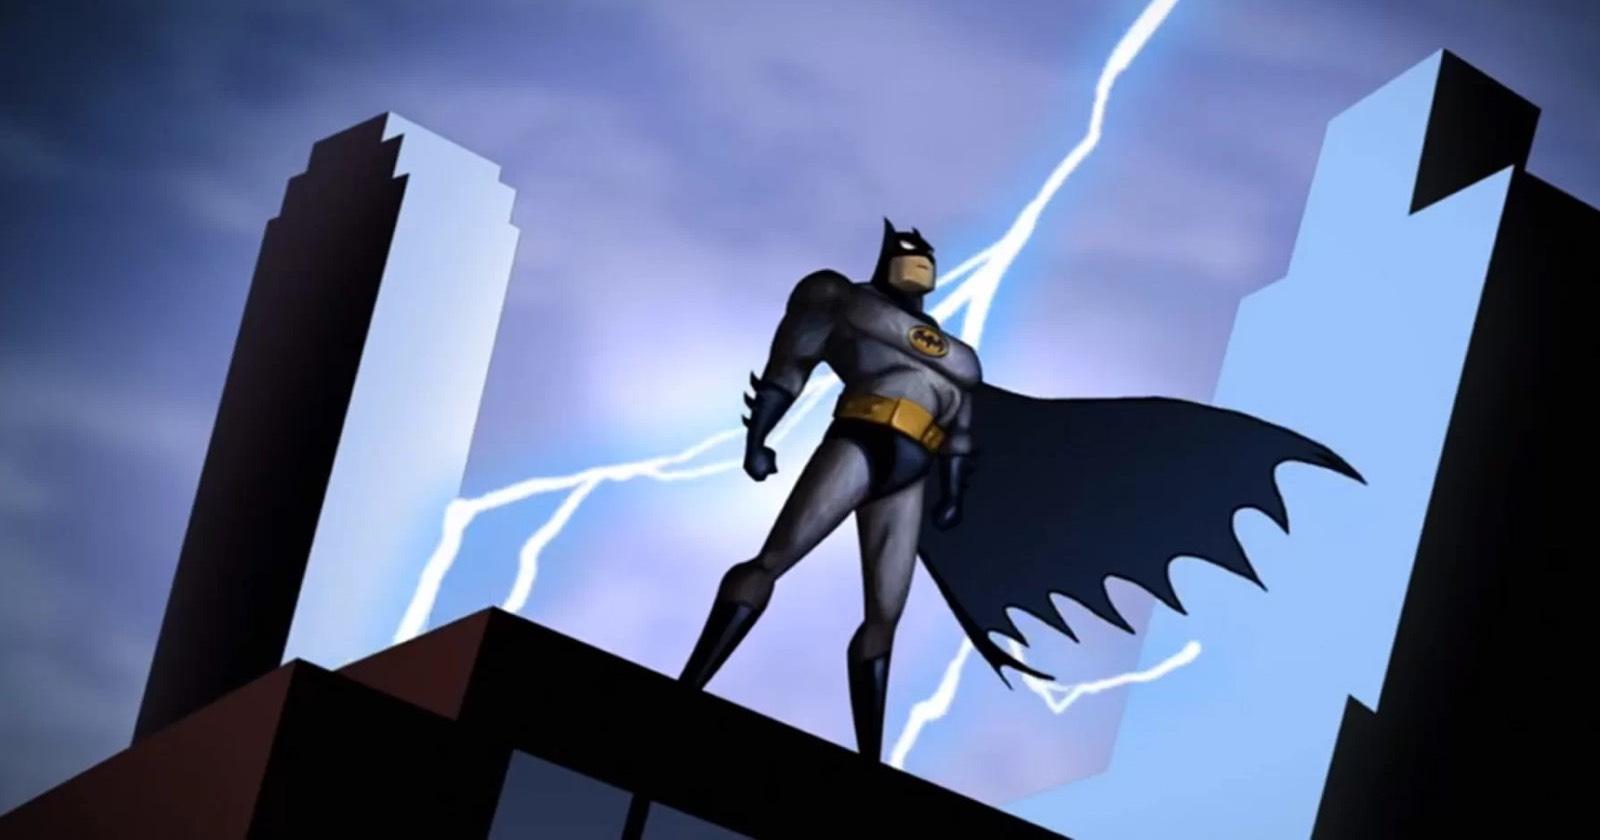 La serie animada de Batman se encuentra entre las 15 mejores series según IMDb